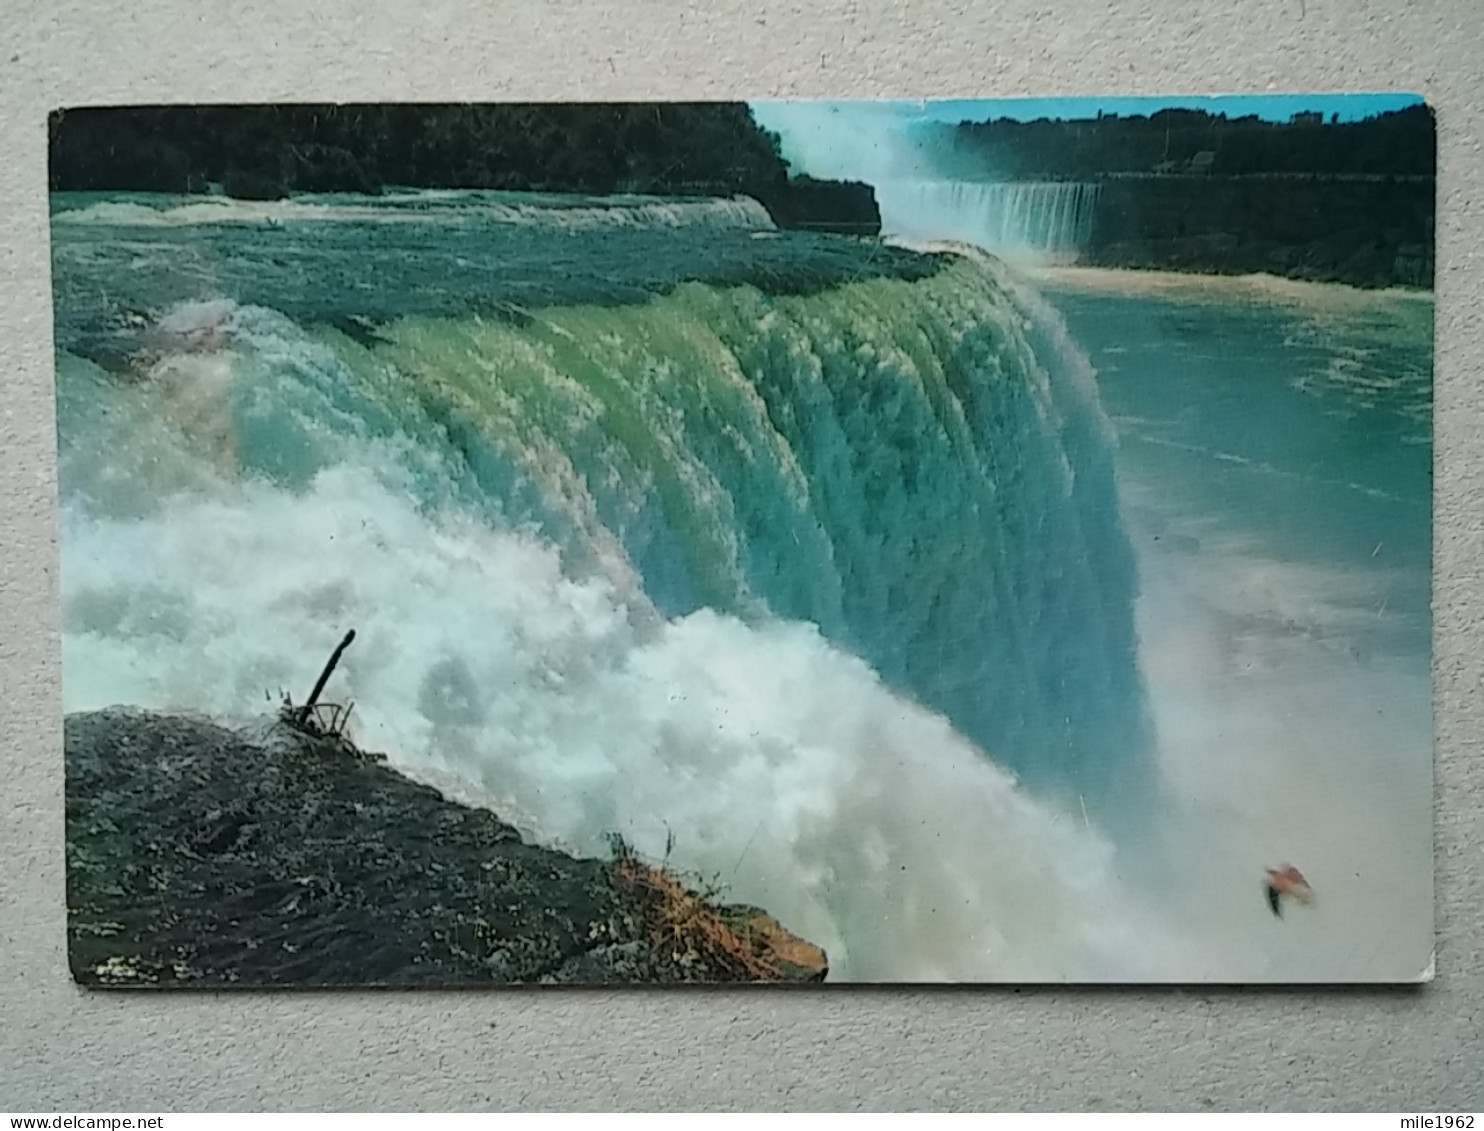 Kov 574-3 - NIAGARA FALLS, CANADA, - Niagarafälle